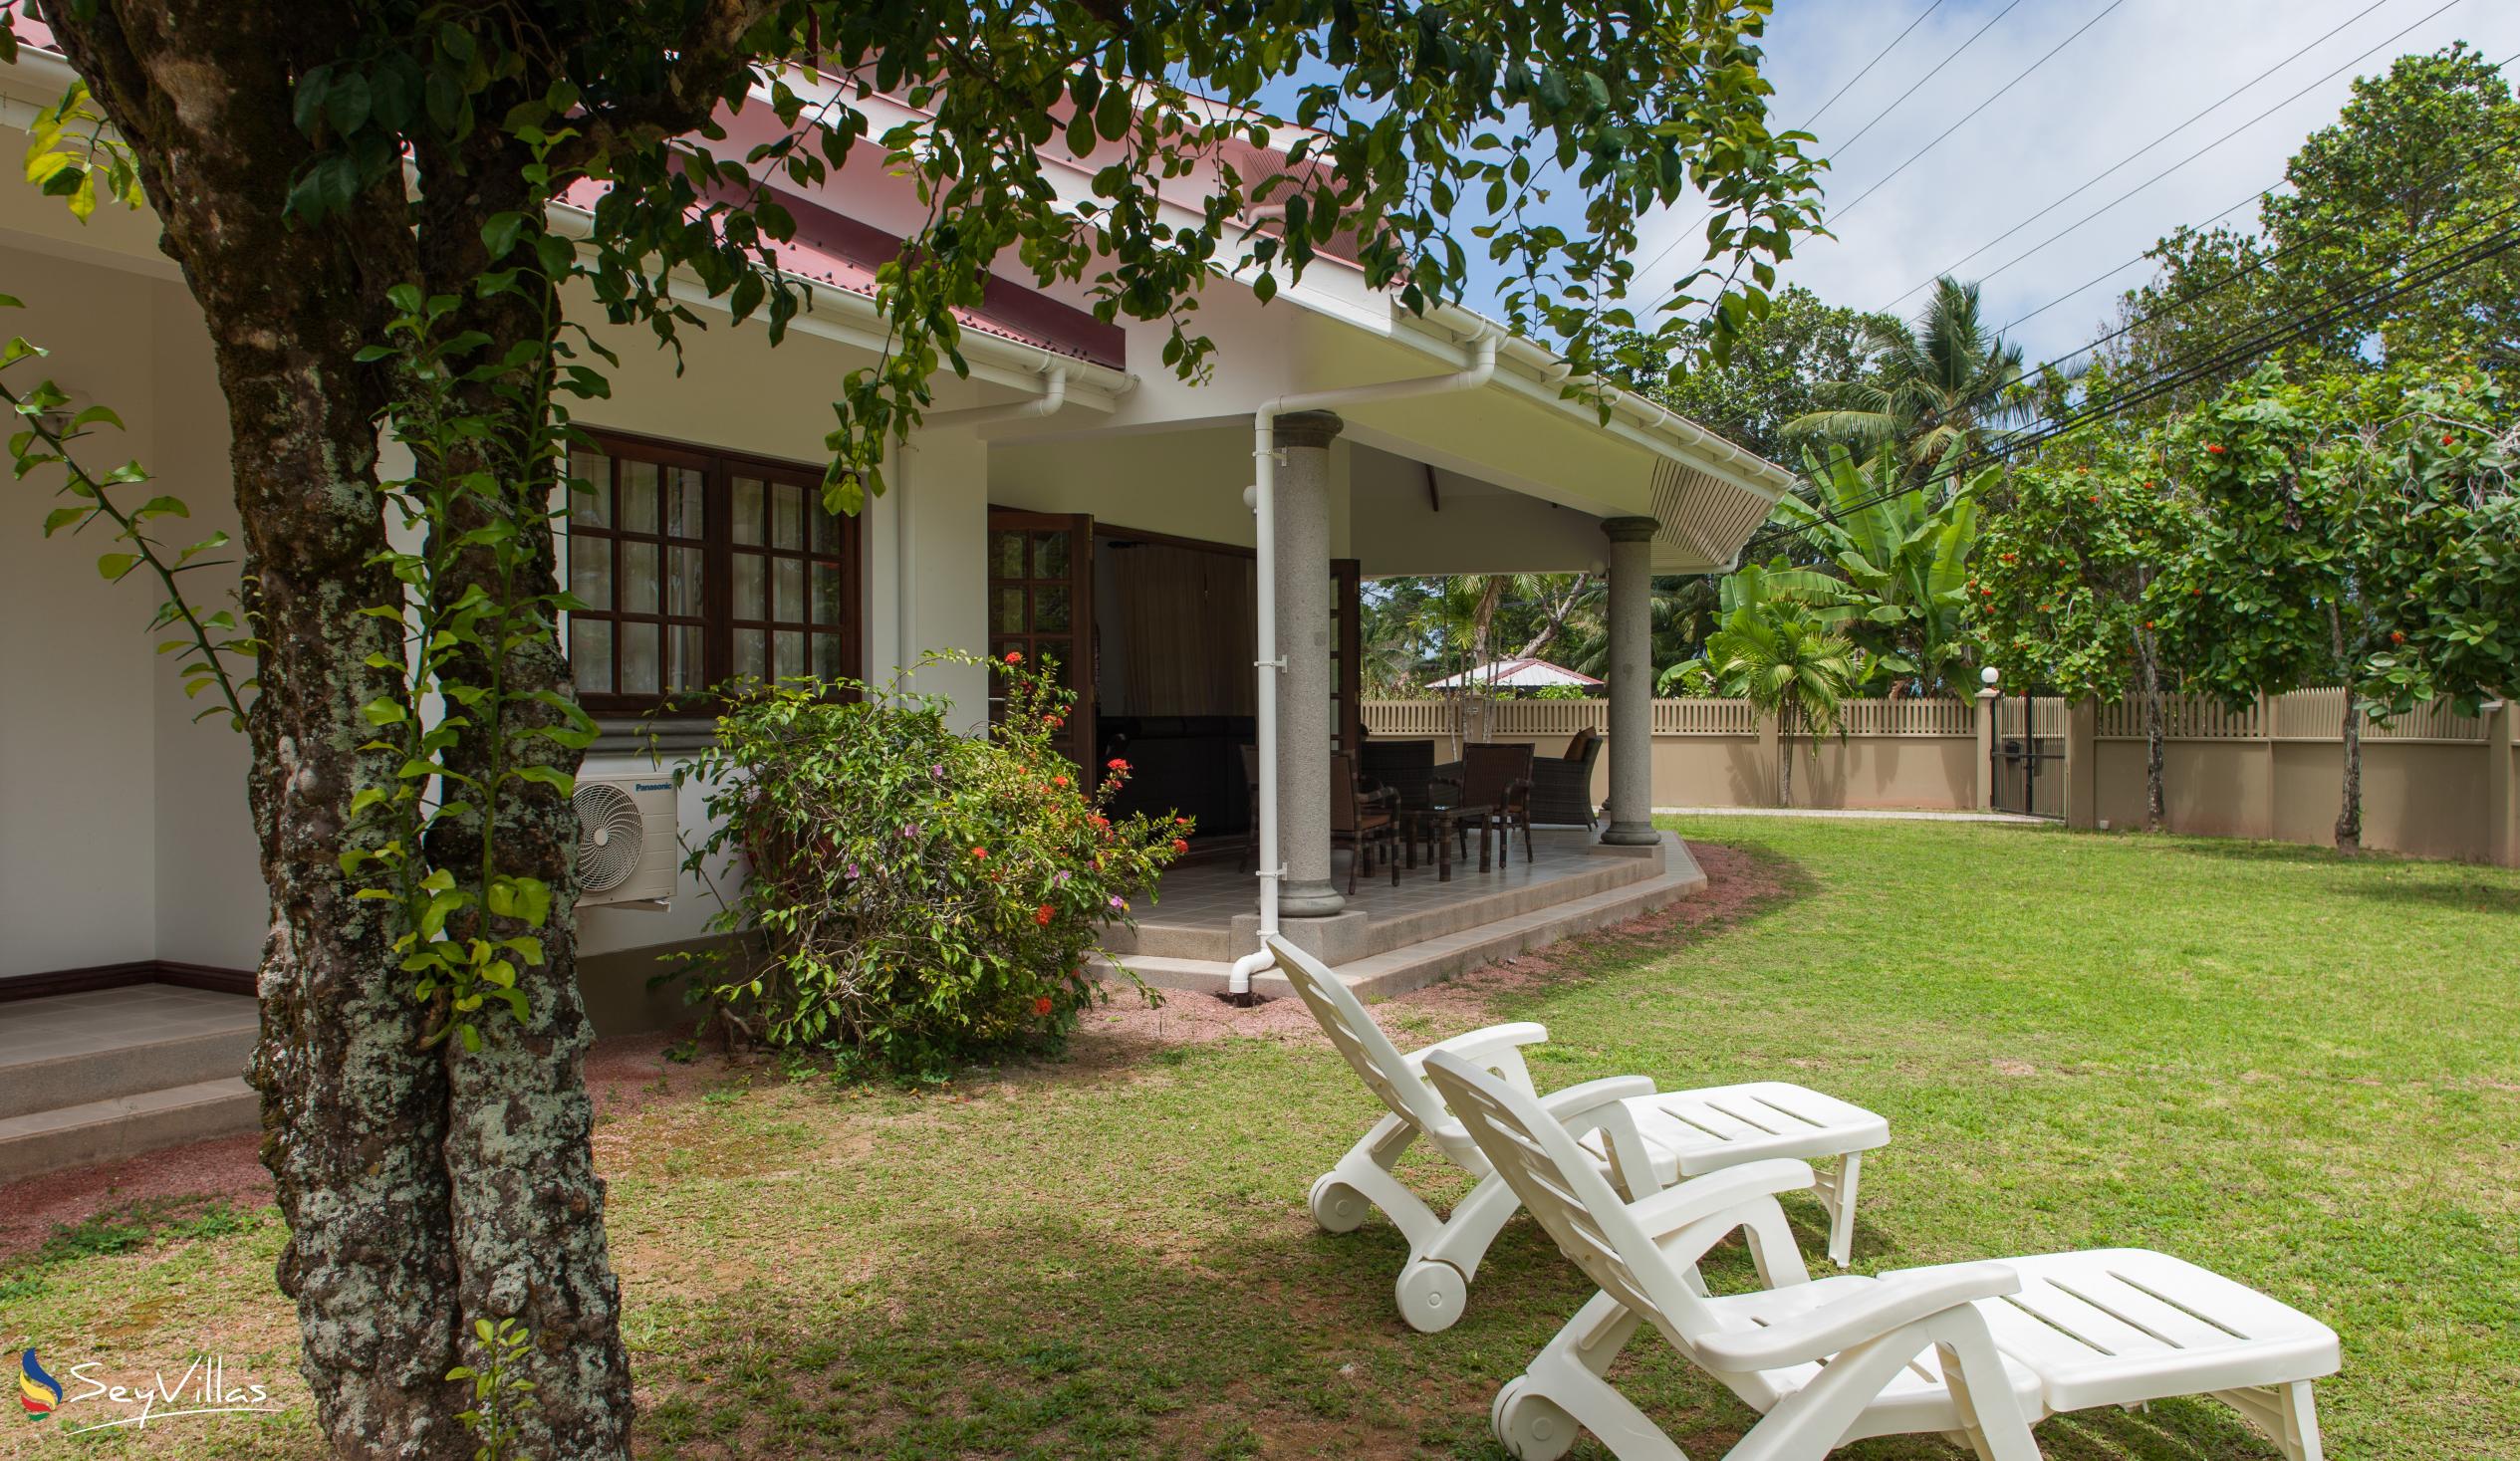 Foto 9: Villa Saint Sauveur - Aussenbereich - Praslin (Seychellen)